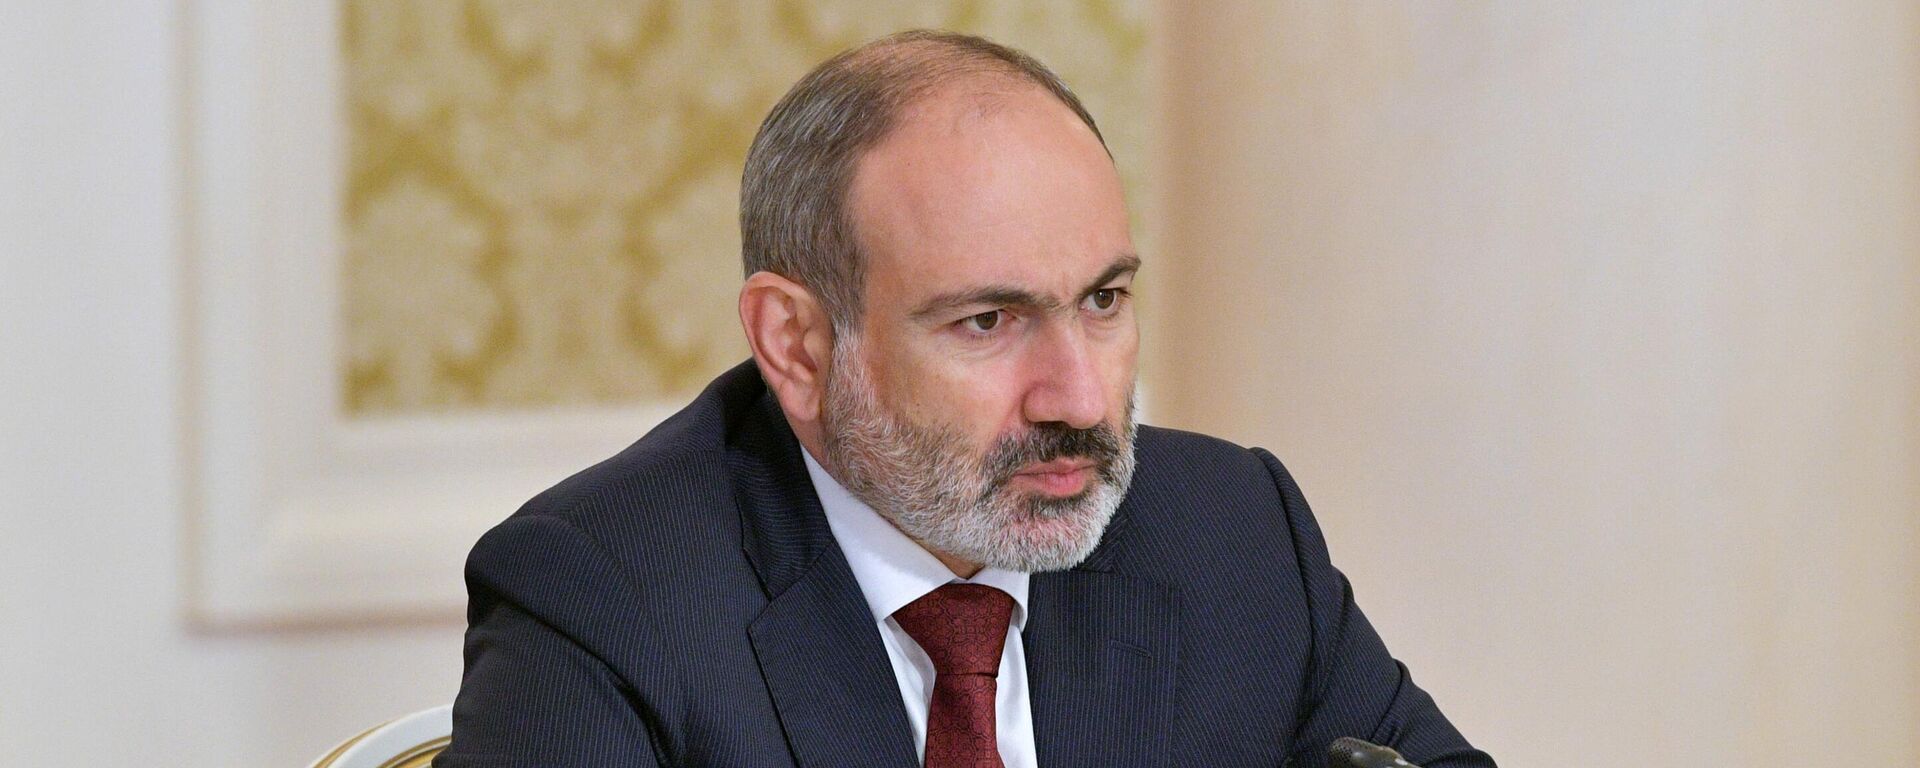 Исполняющий обязанности премьер-министра Армении Никол Пашинян - Sputnik Таджикистан, 1920, 29.07.2021